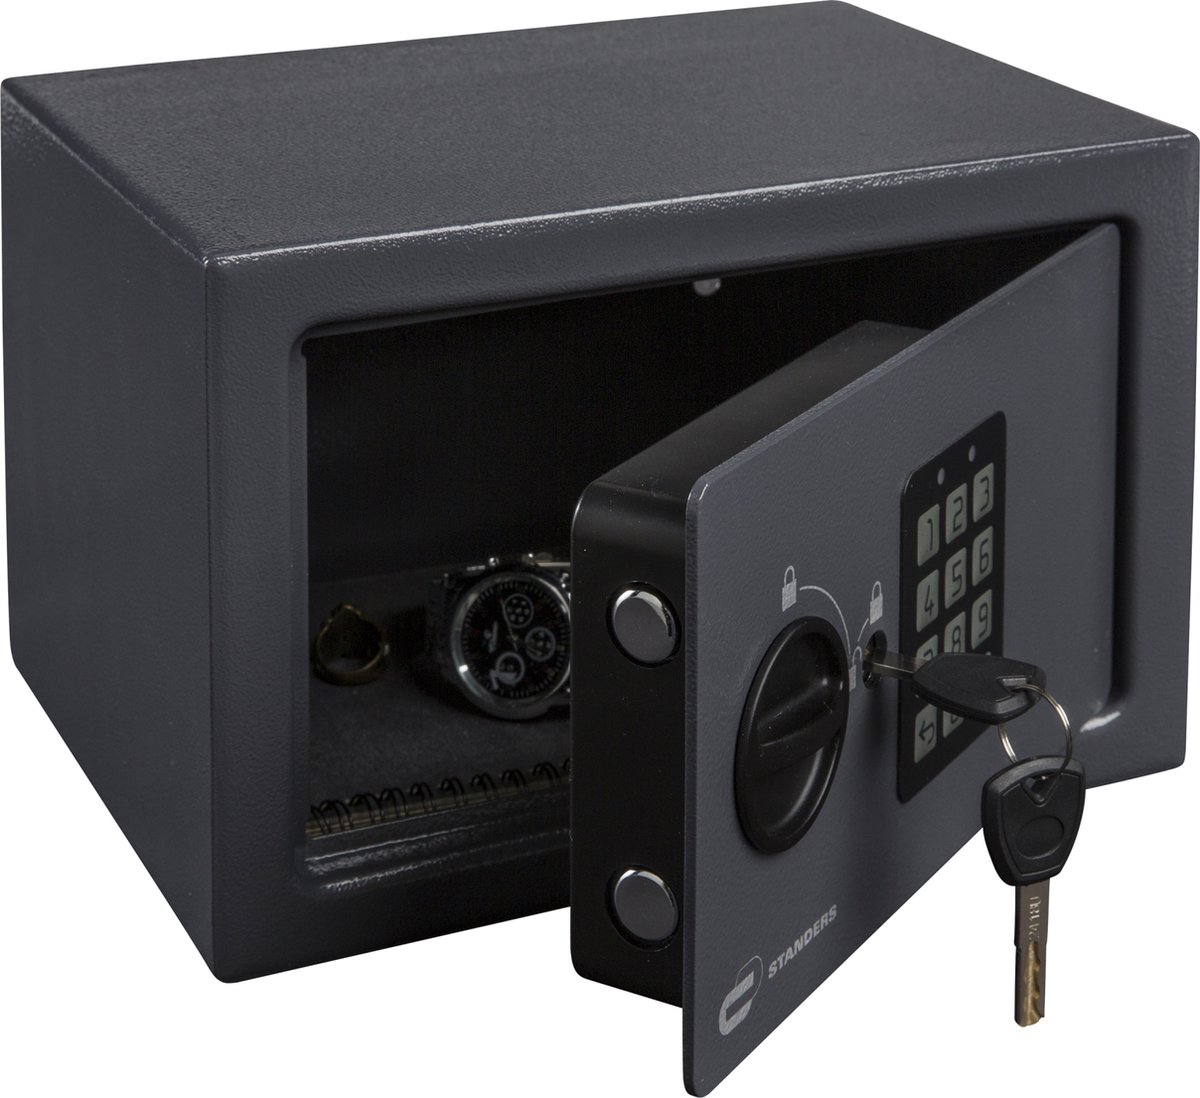 STANDERS - Elektronische kluis - 9L - 18 x 20 x 28 cm - Wandkluis - Codekluis - 2 veiligheidssleutels - Elektronische wachtwoordkluis - Stander